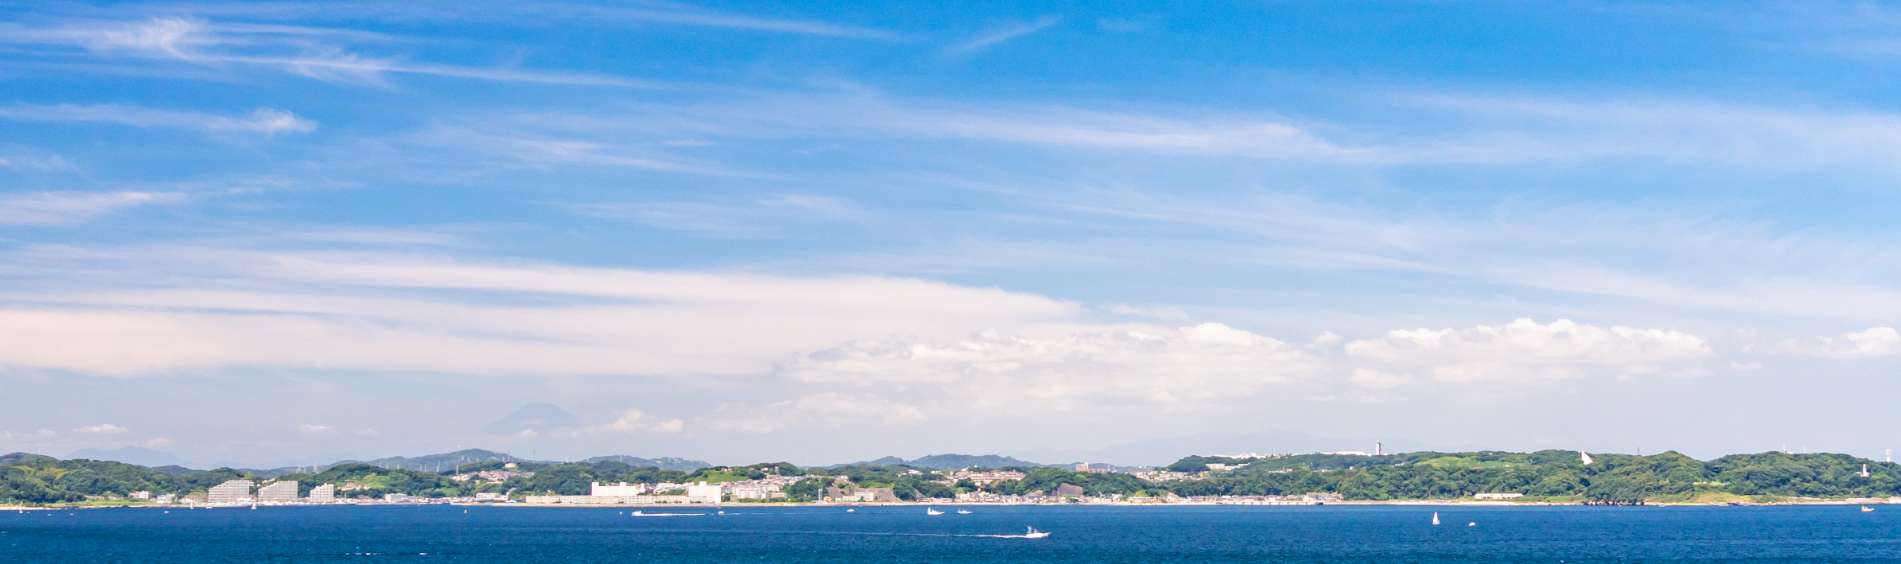 久里浜の海と空の写真